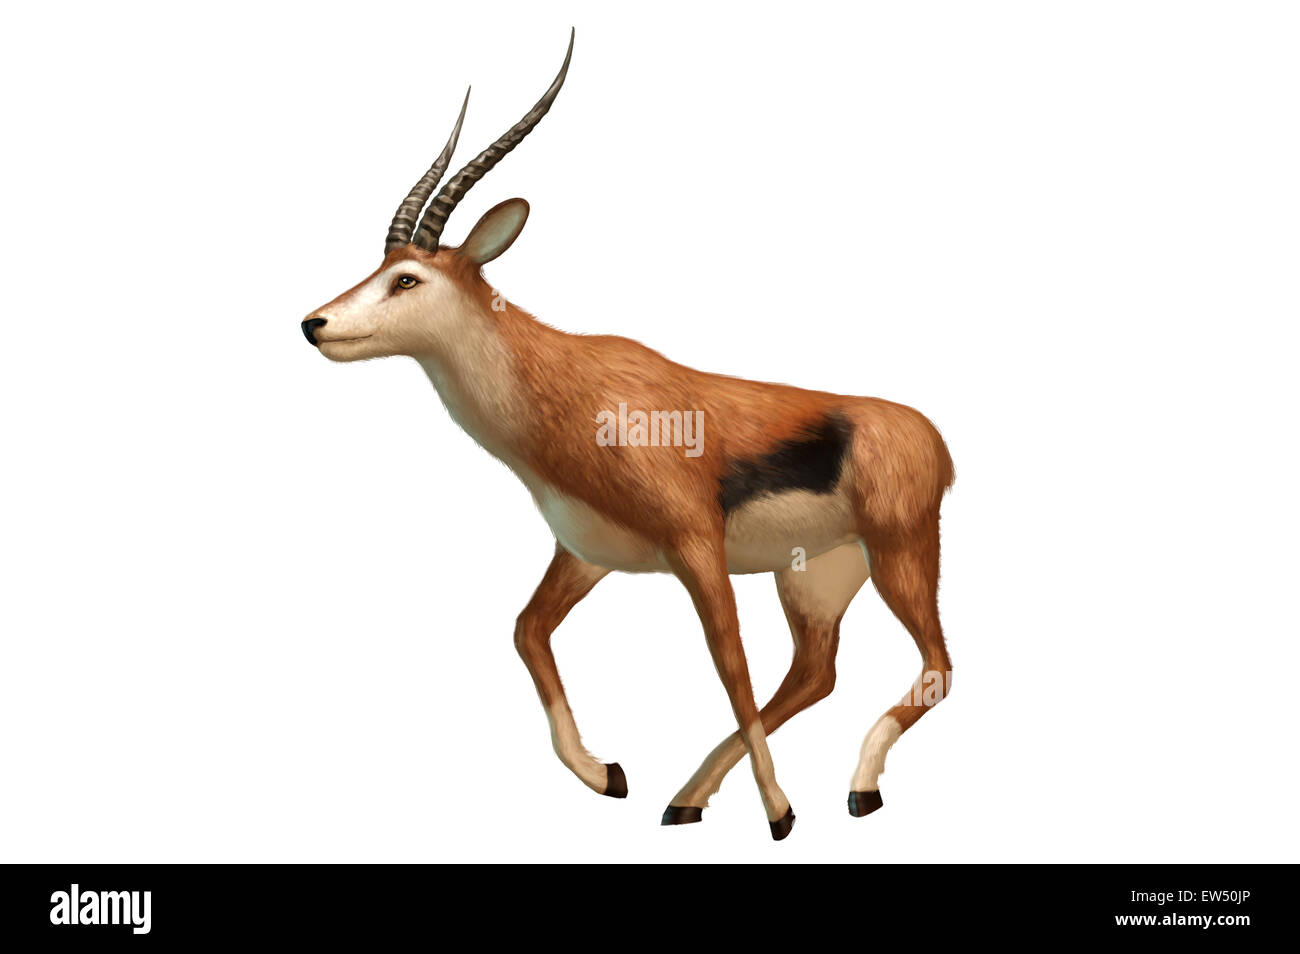 El antãlope Imágenes recortadas de stock - Página 2 - Alamy